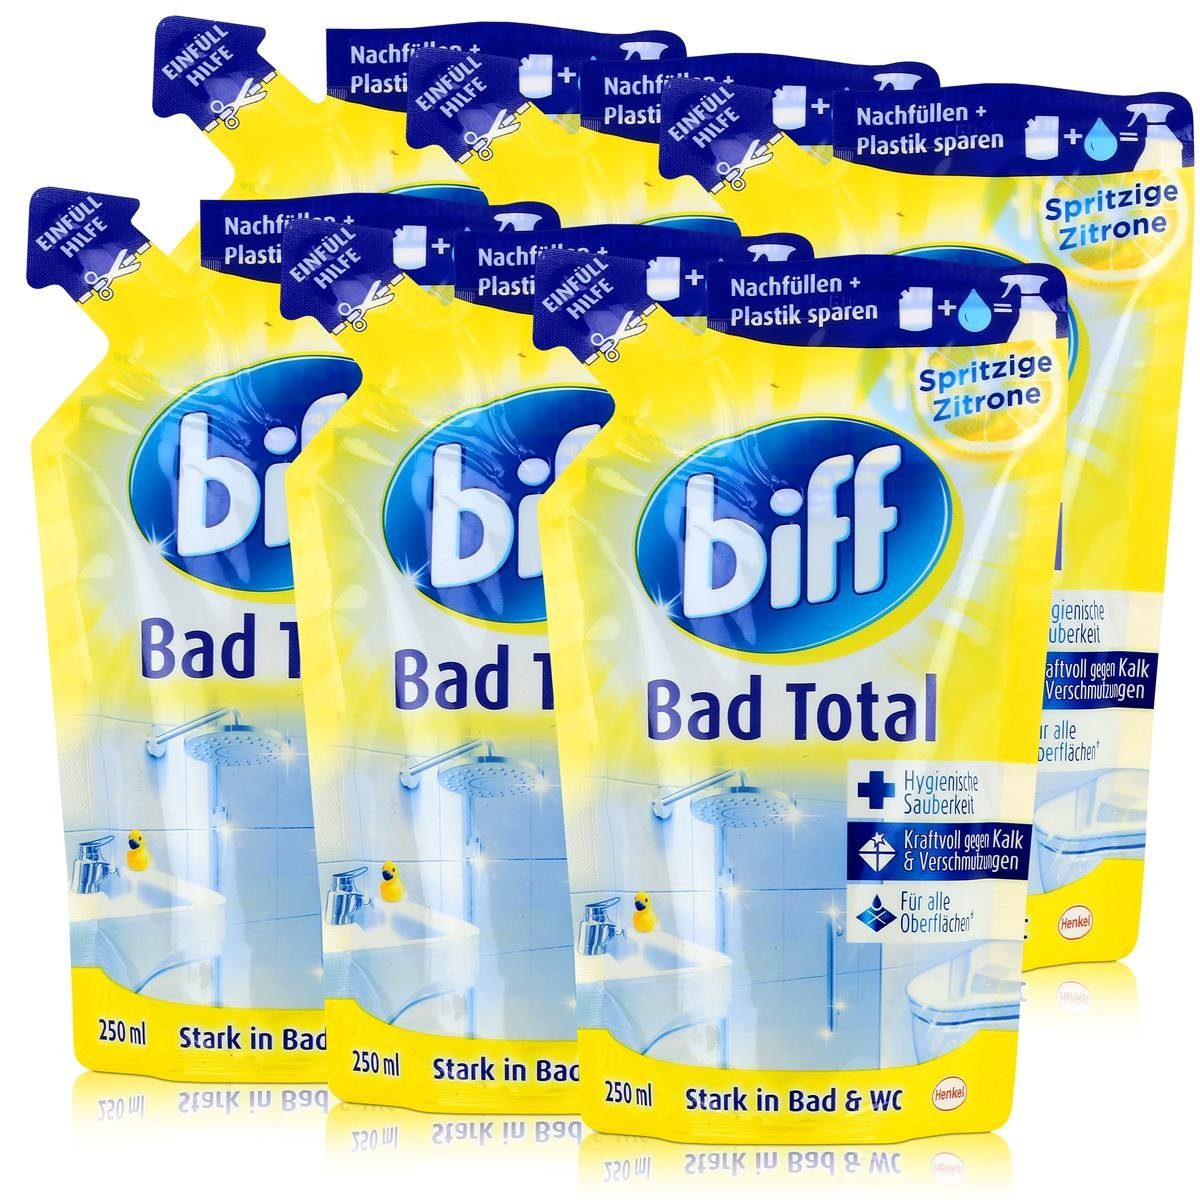 biff Biff Bad Total Zitrone Nachfüllbeutel 250ml - Kraftvoll gegen Kalk (6e Badreiniger | Badreiniger